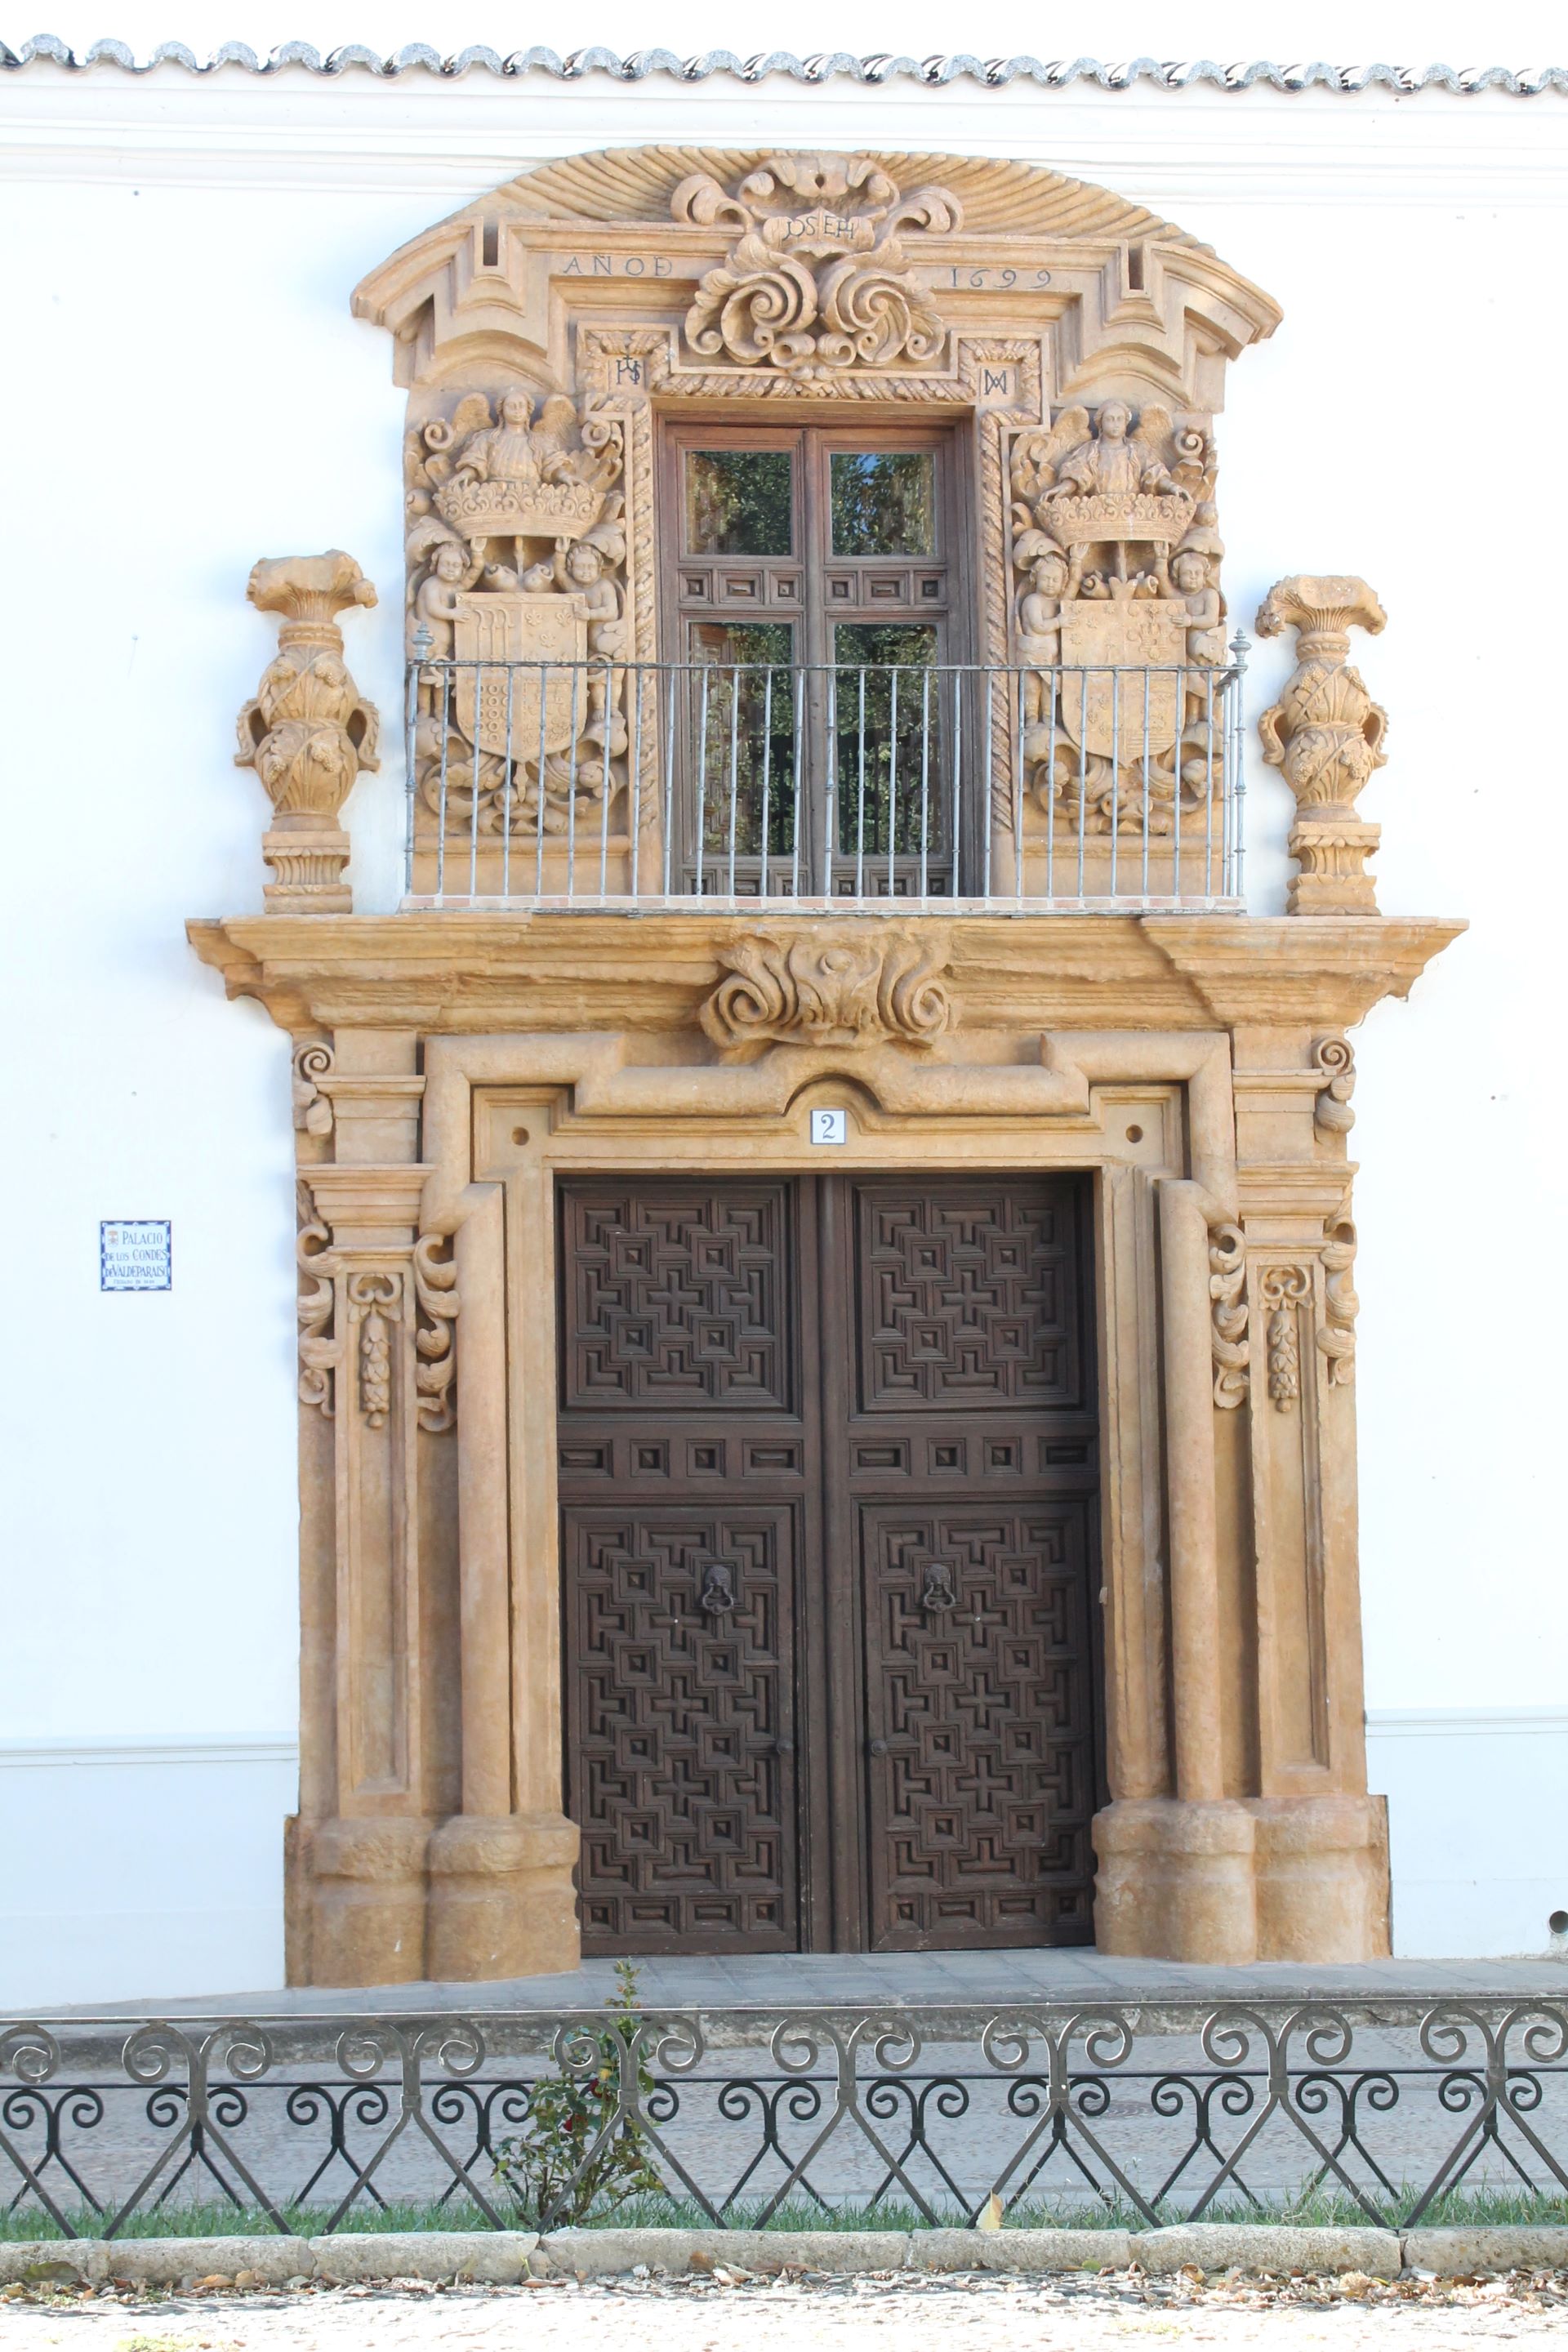 Fig. nº 6: Fachada del Palacio de los Condes de Valdeparaiso (J. Alcaide)